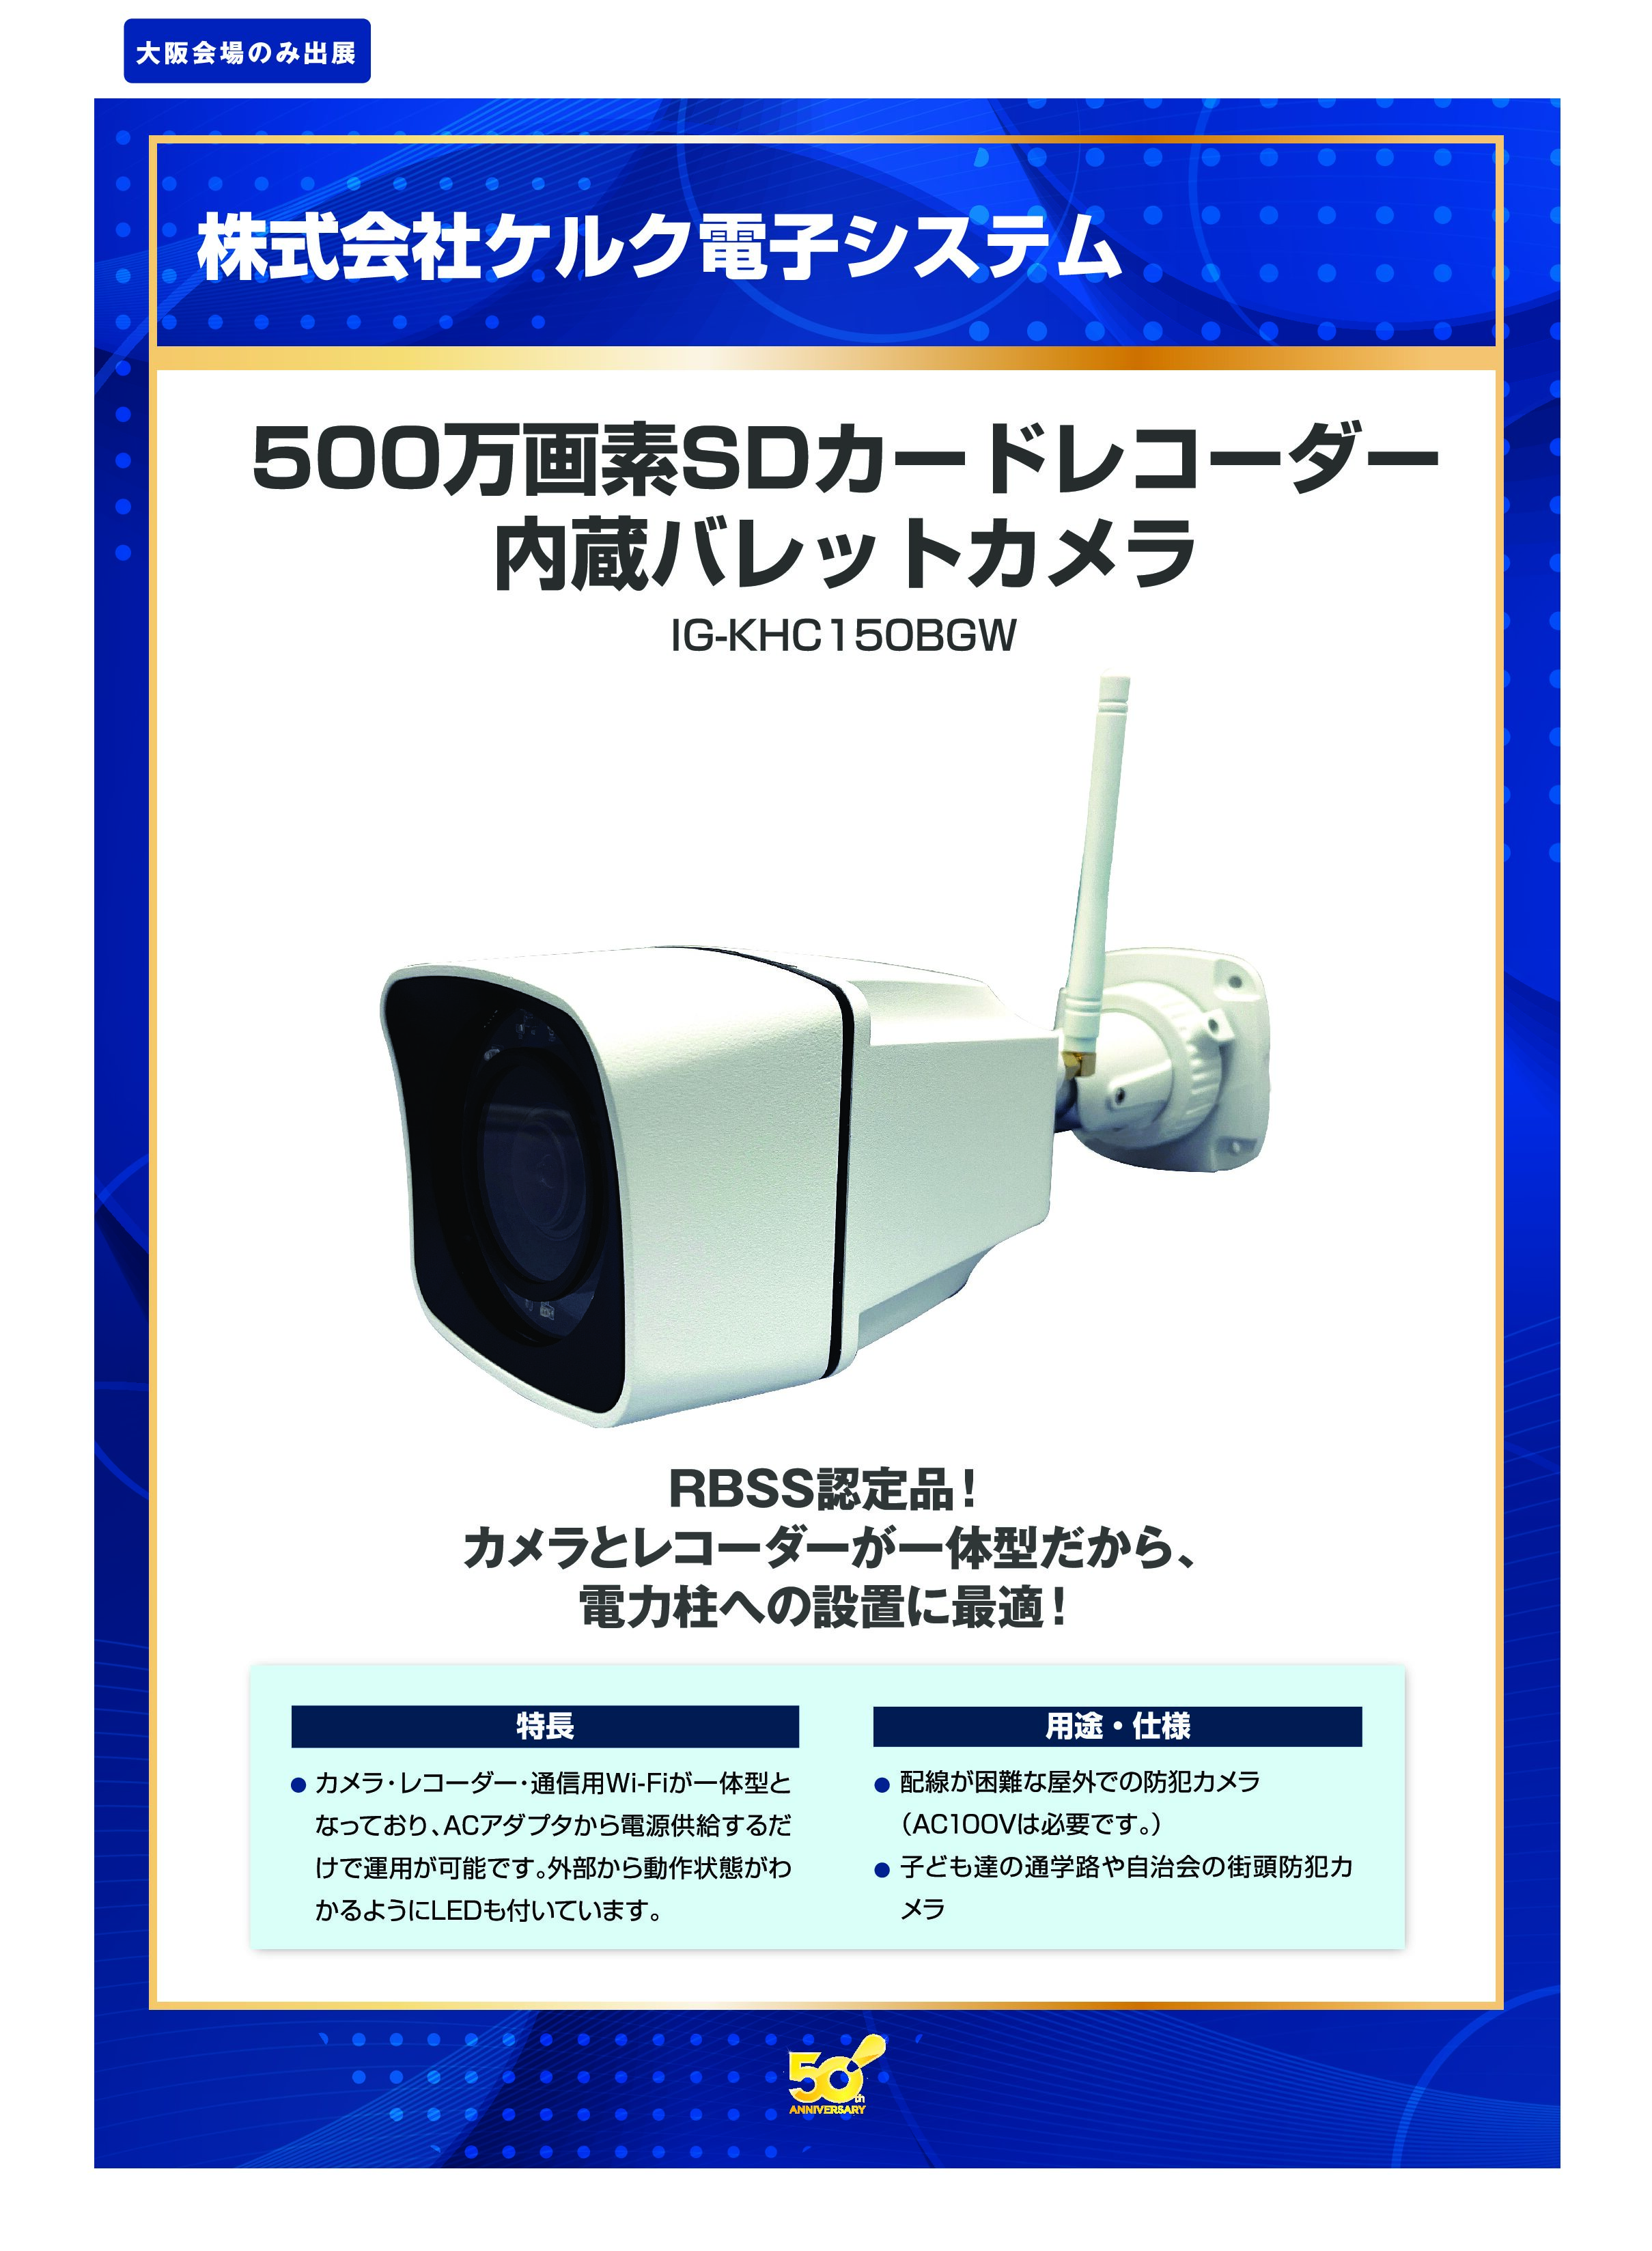 「500万画素SDカードレコーダー 内蔵バレットカメラ」株式会社ケルク電子システムの画像